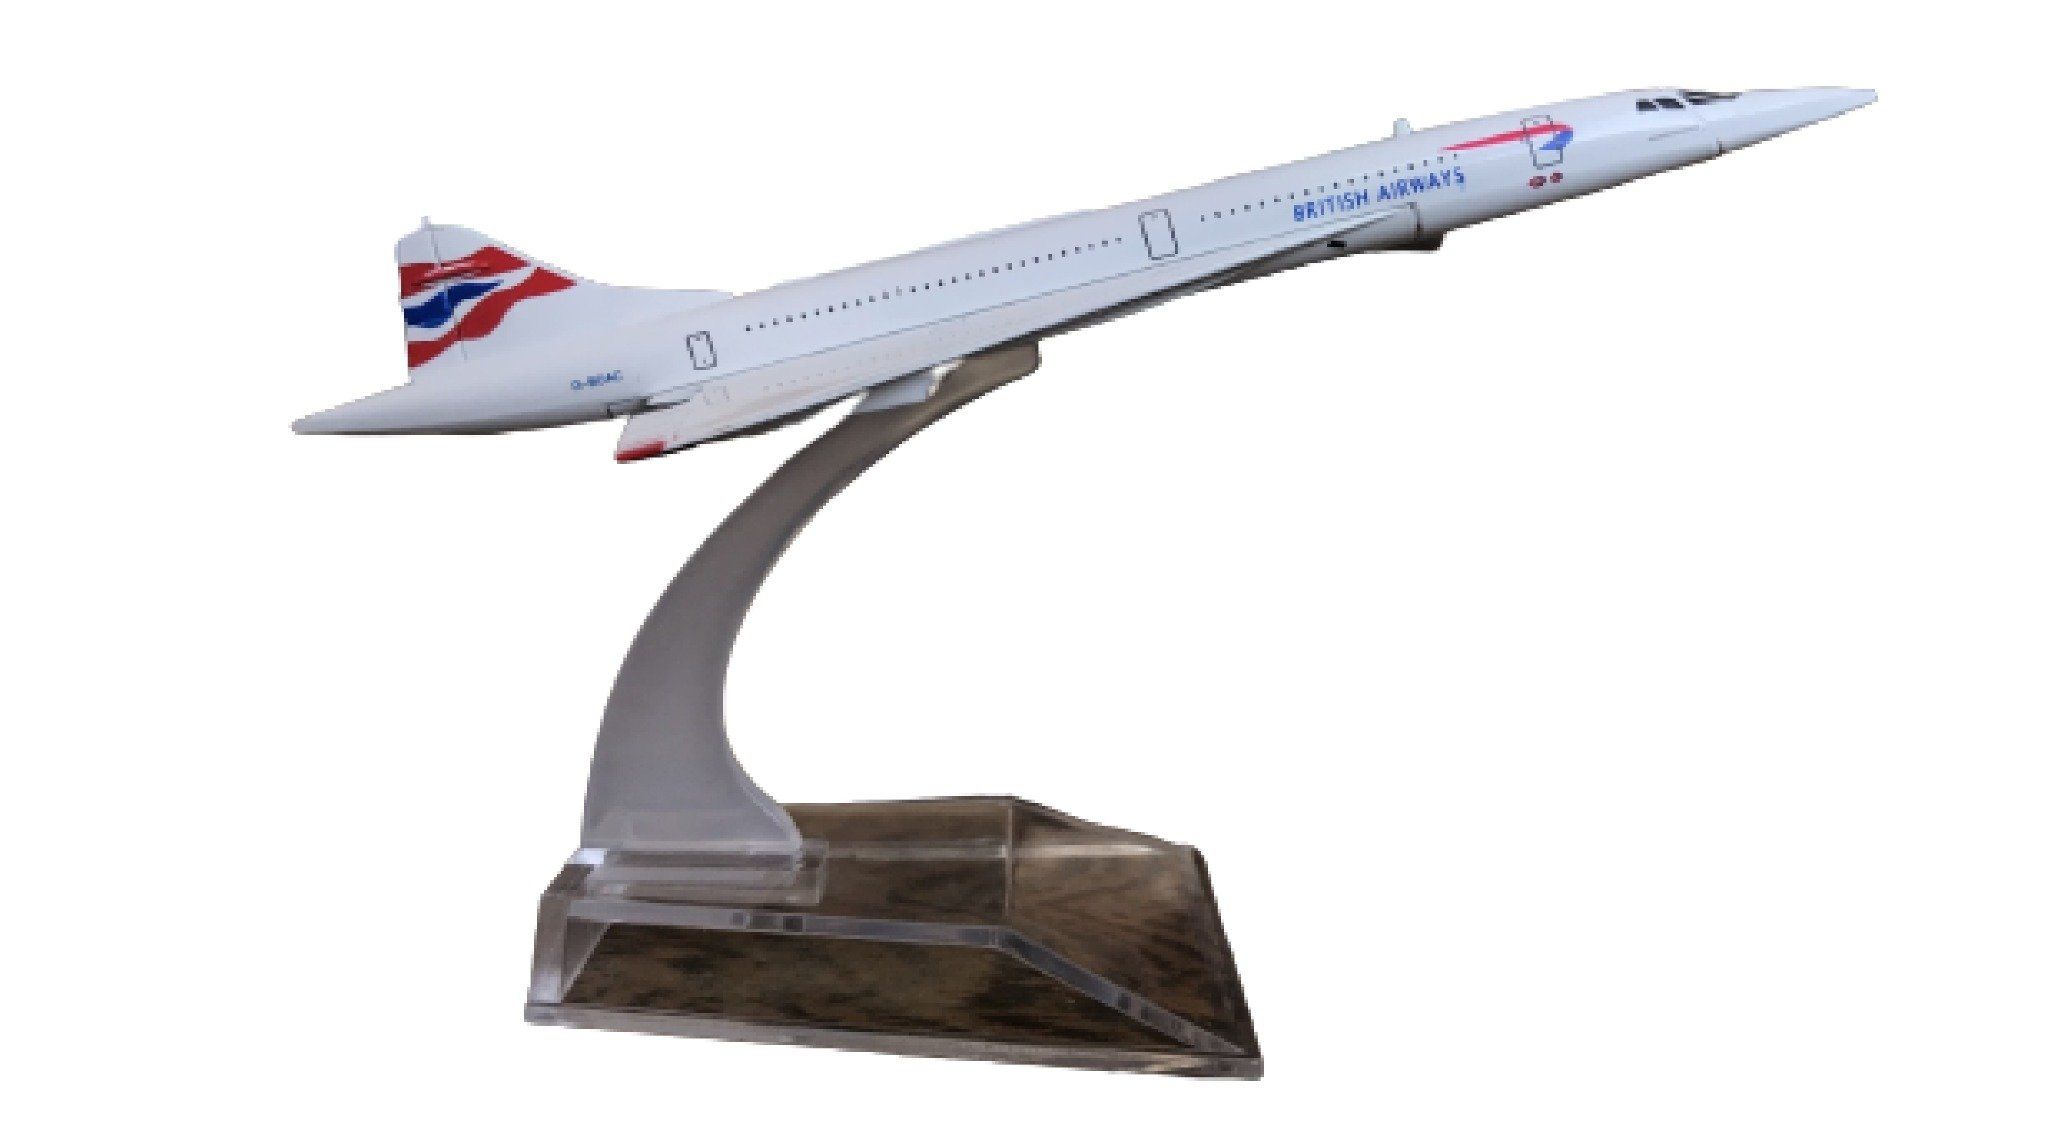  Mô hình máy bay phản lực Concorde British airway 16cm MB16164 